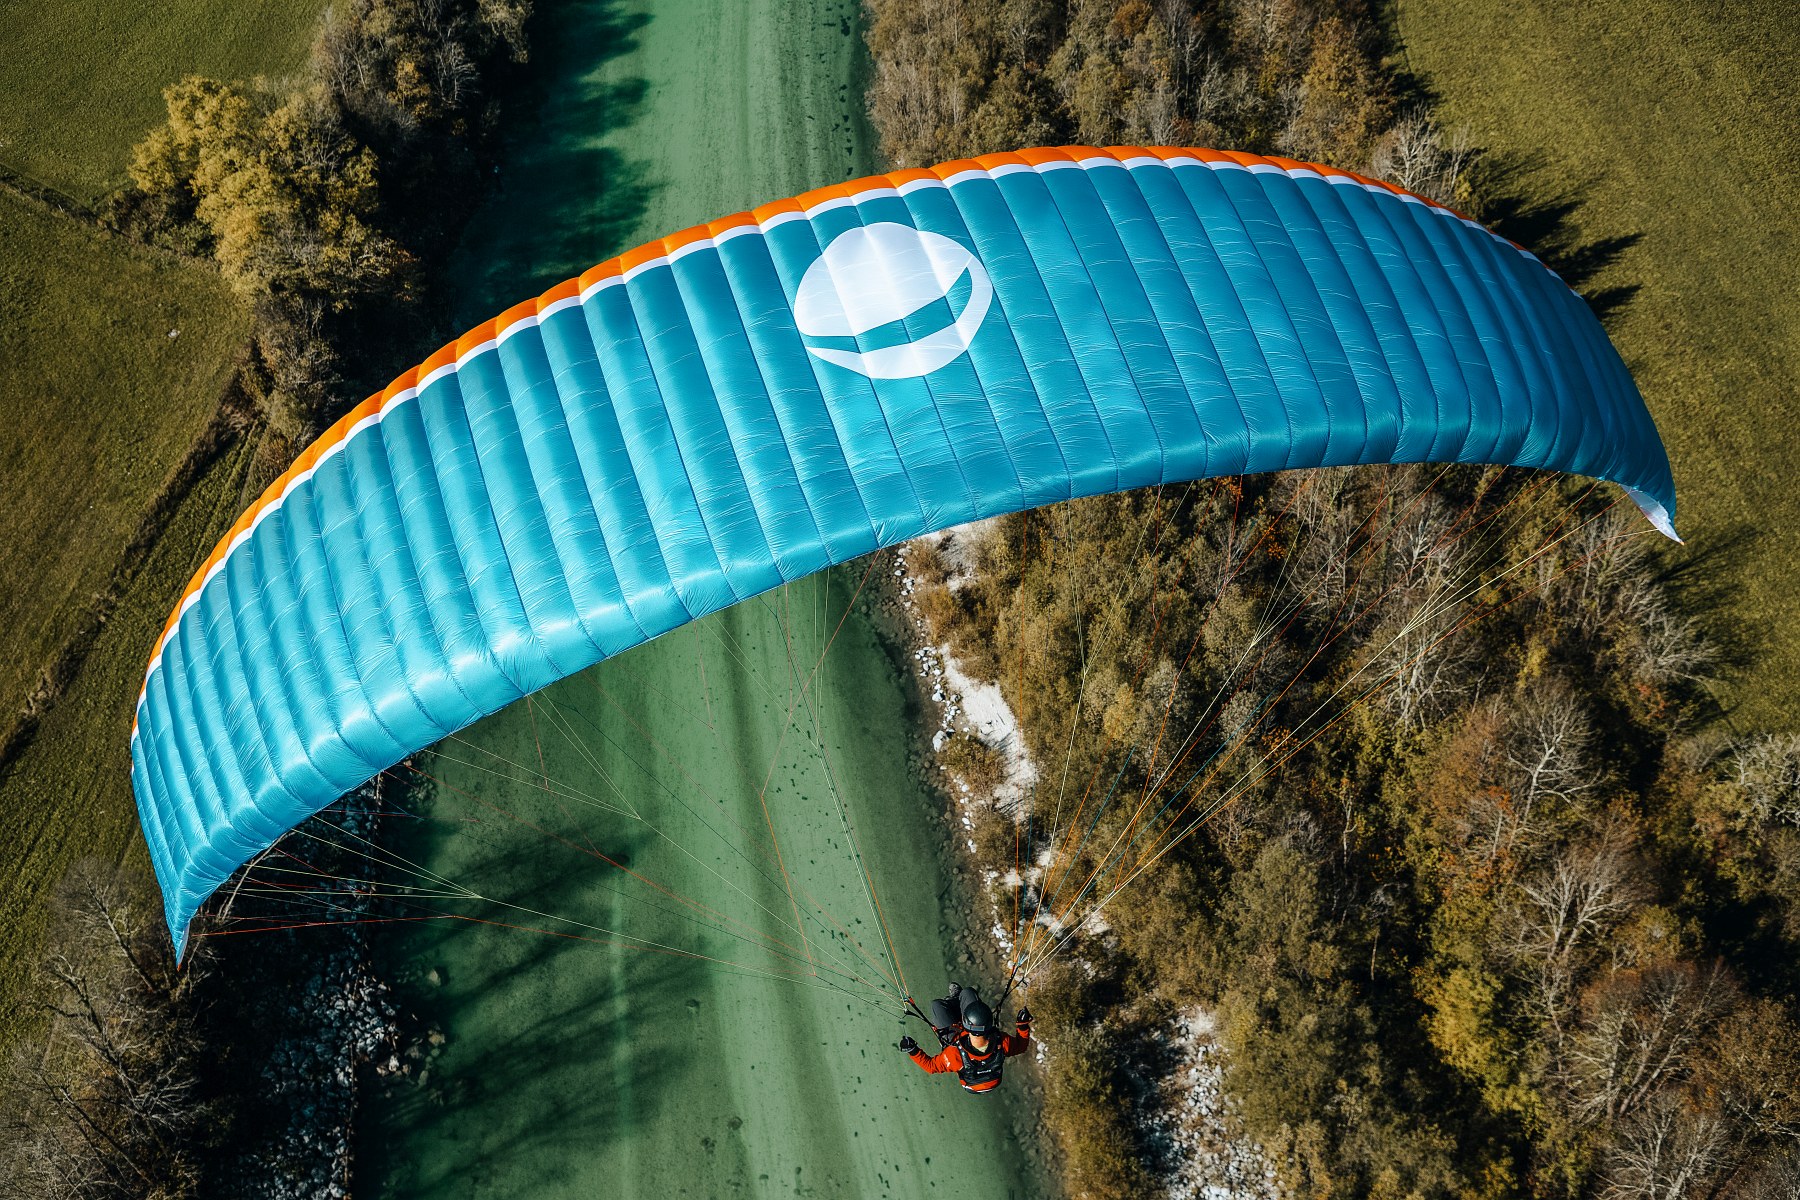 Jadralno padalstvo - Paragliding